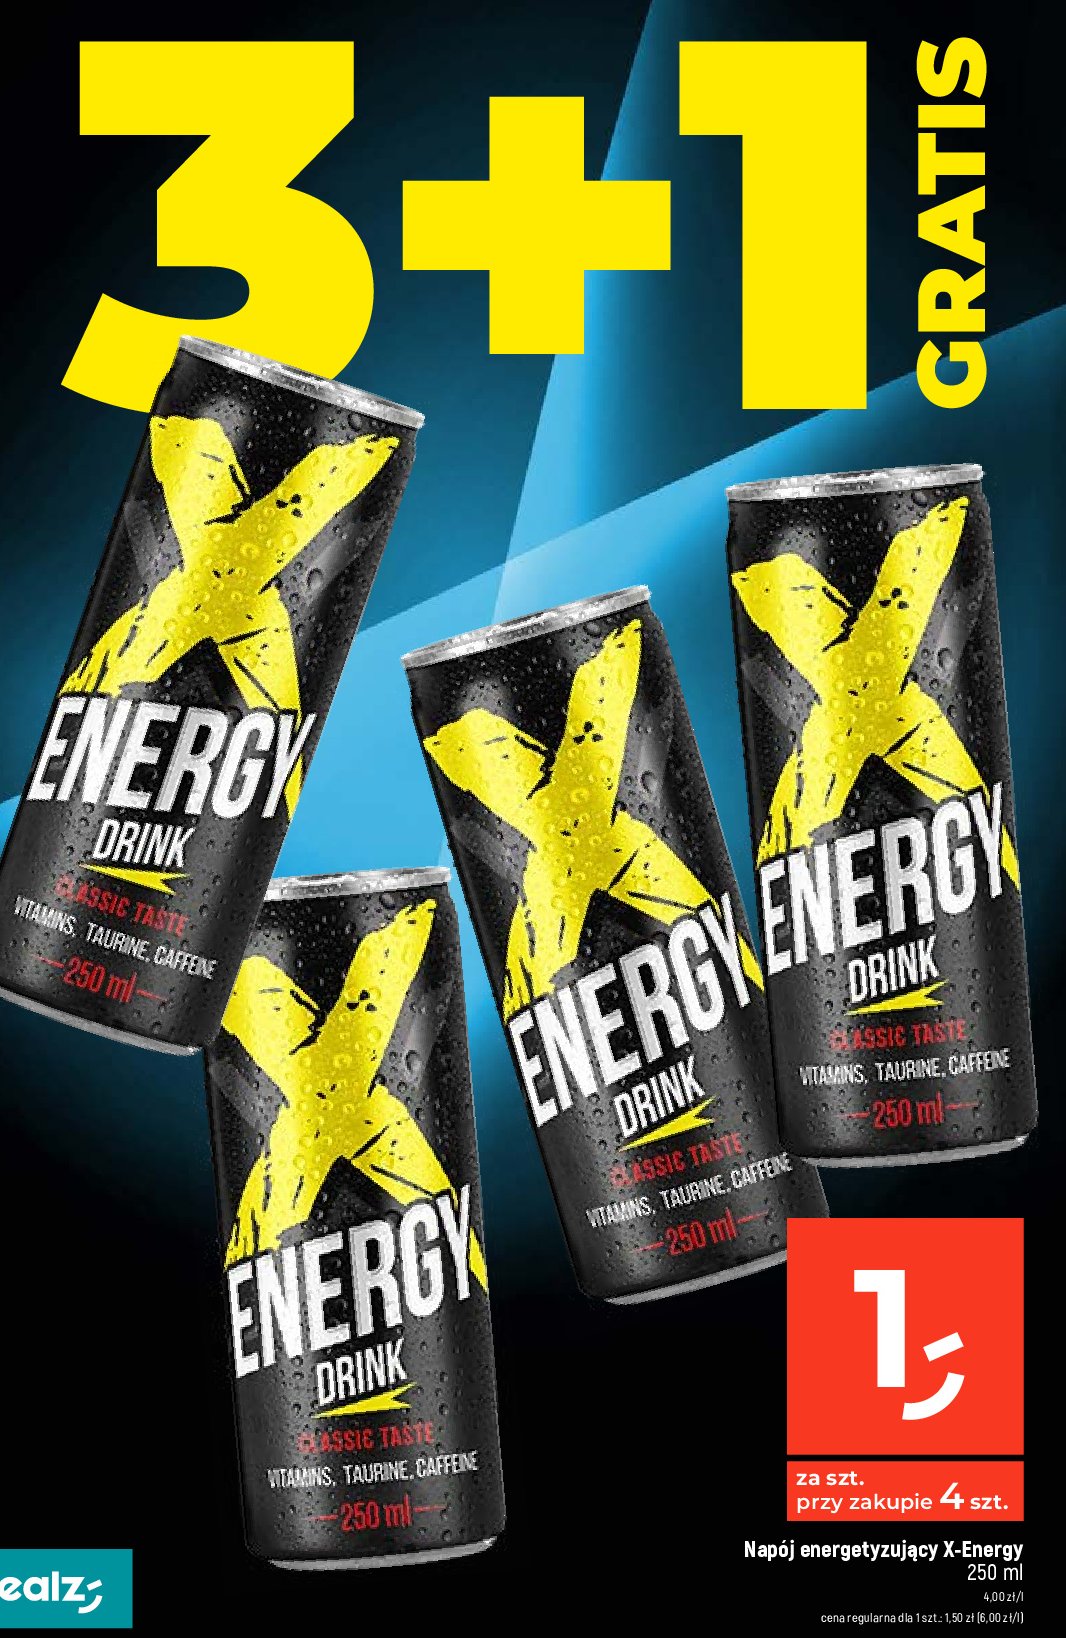 Napój energetyczny classic XL ENERGY DRINK promocja